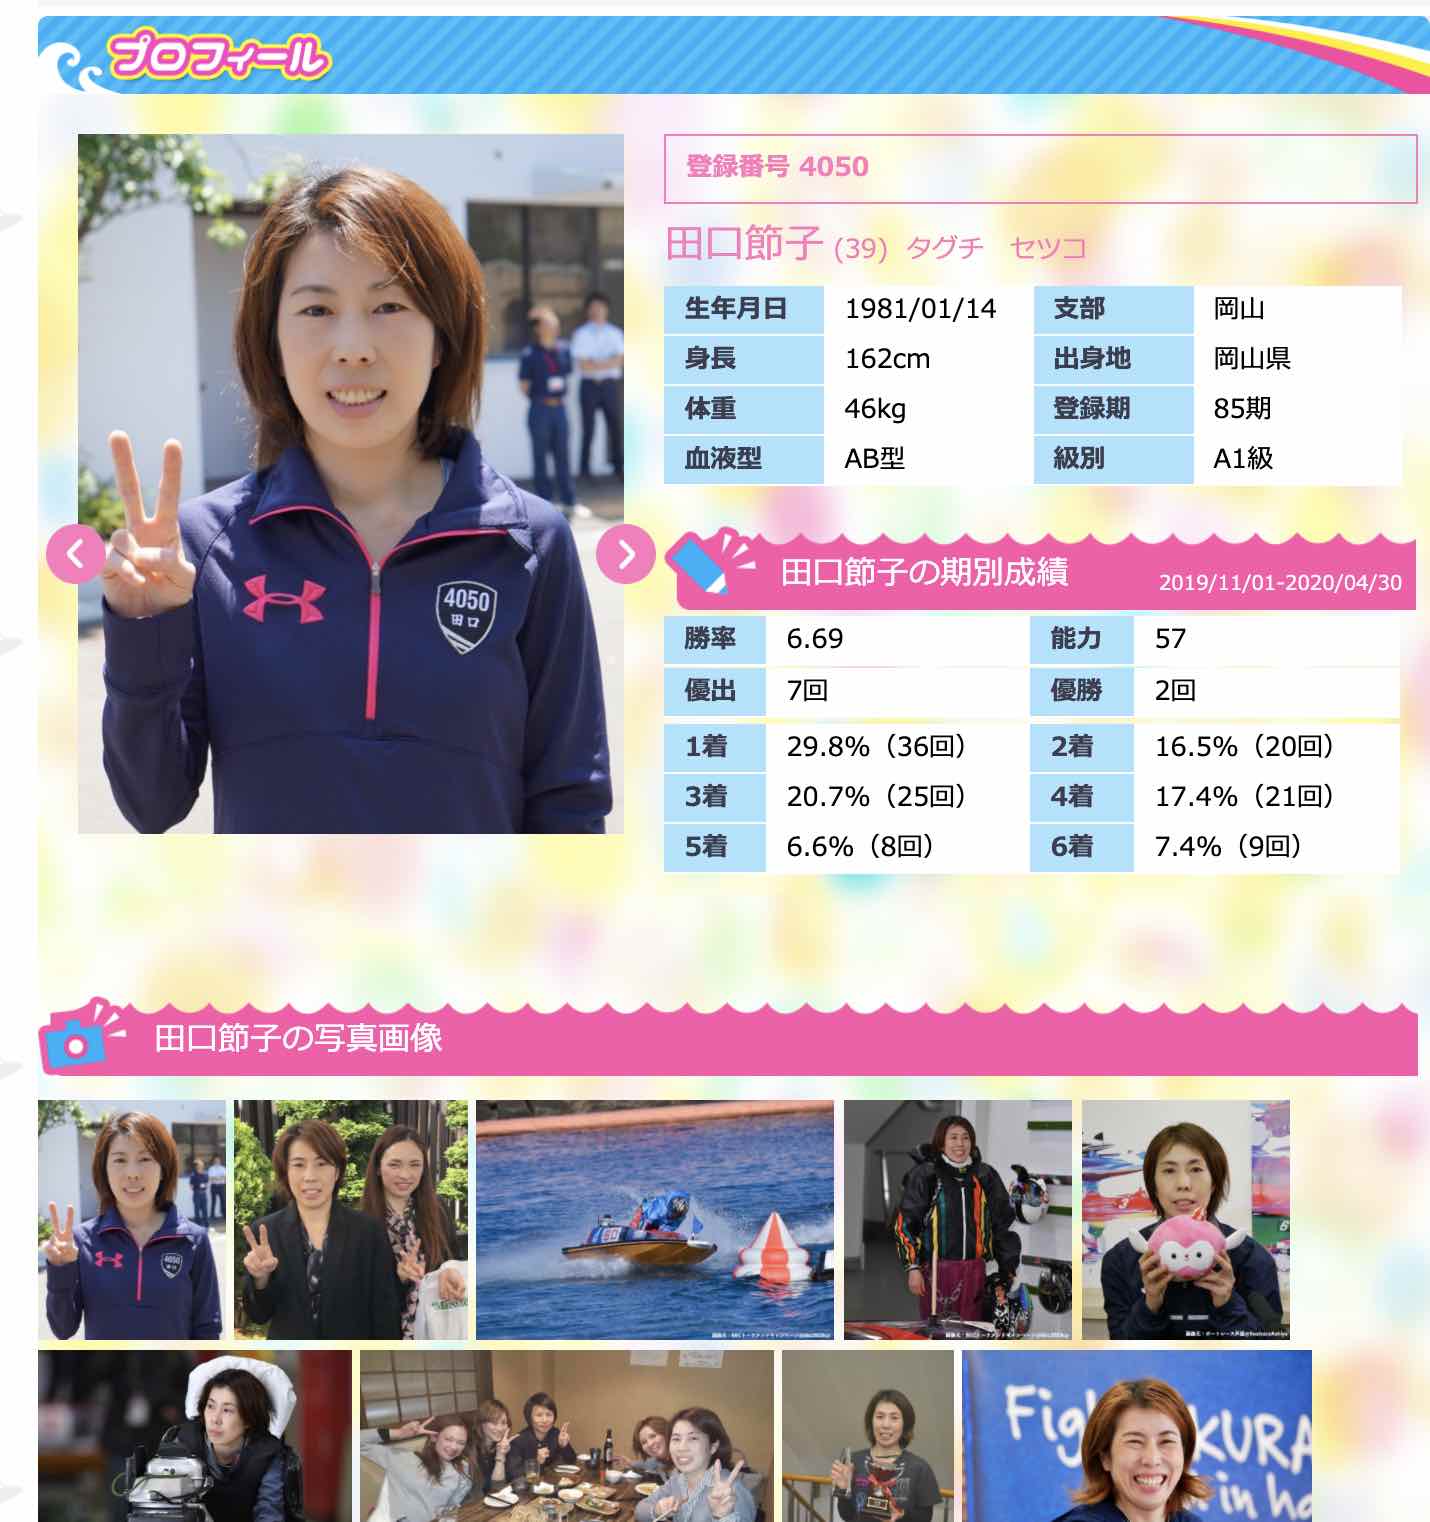 競艇女子、ボートレーサー田口節子選手の写真や情報